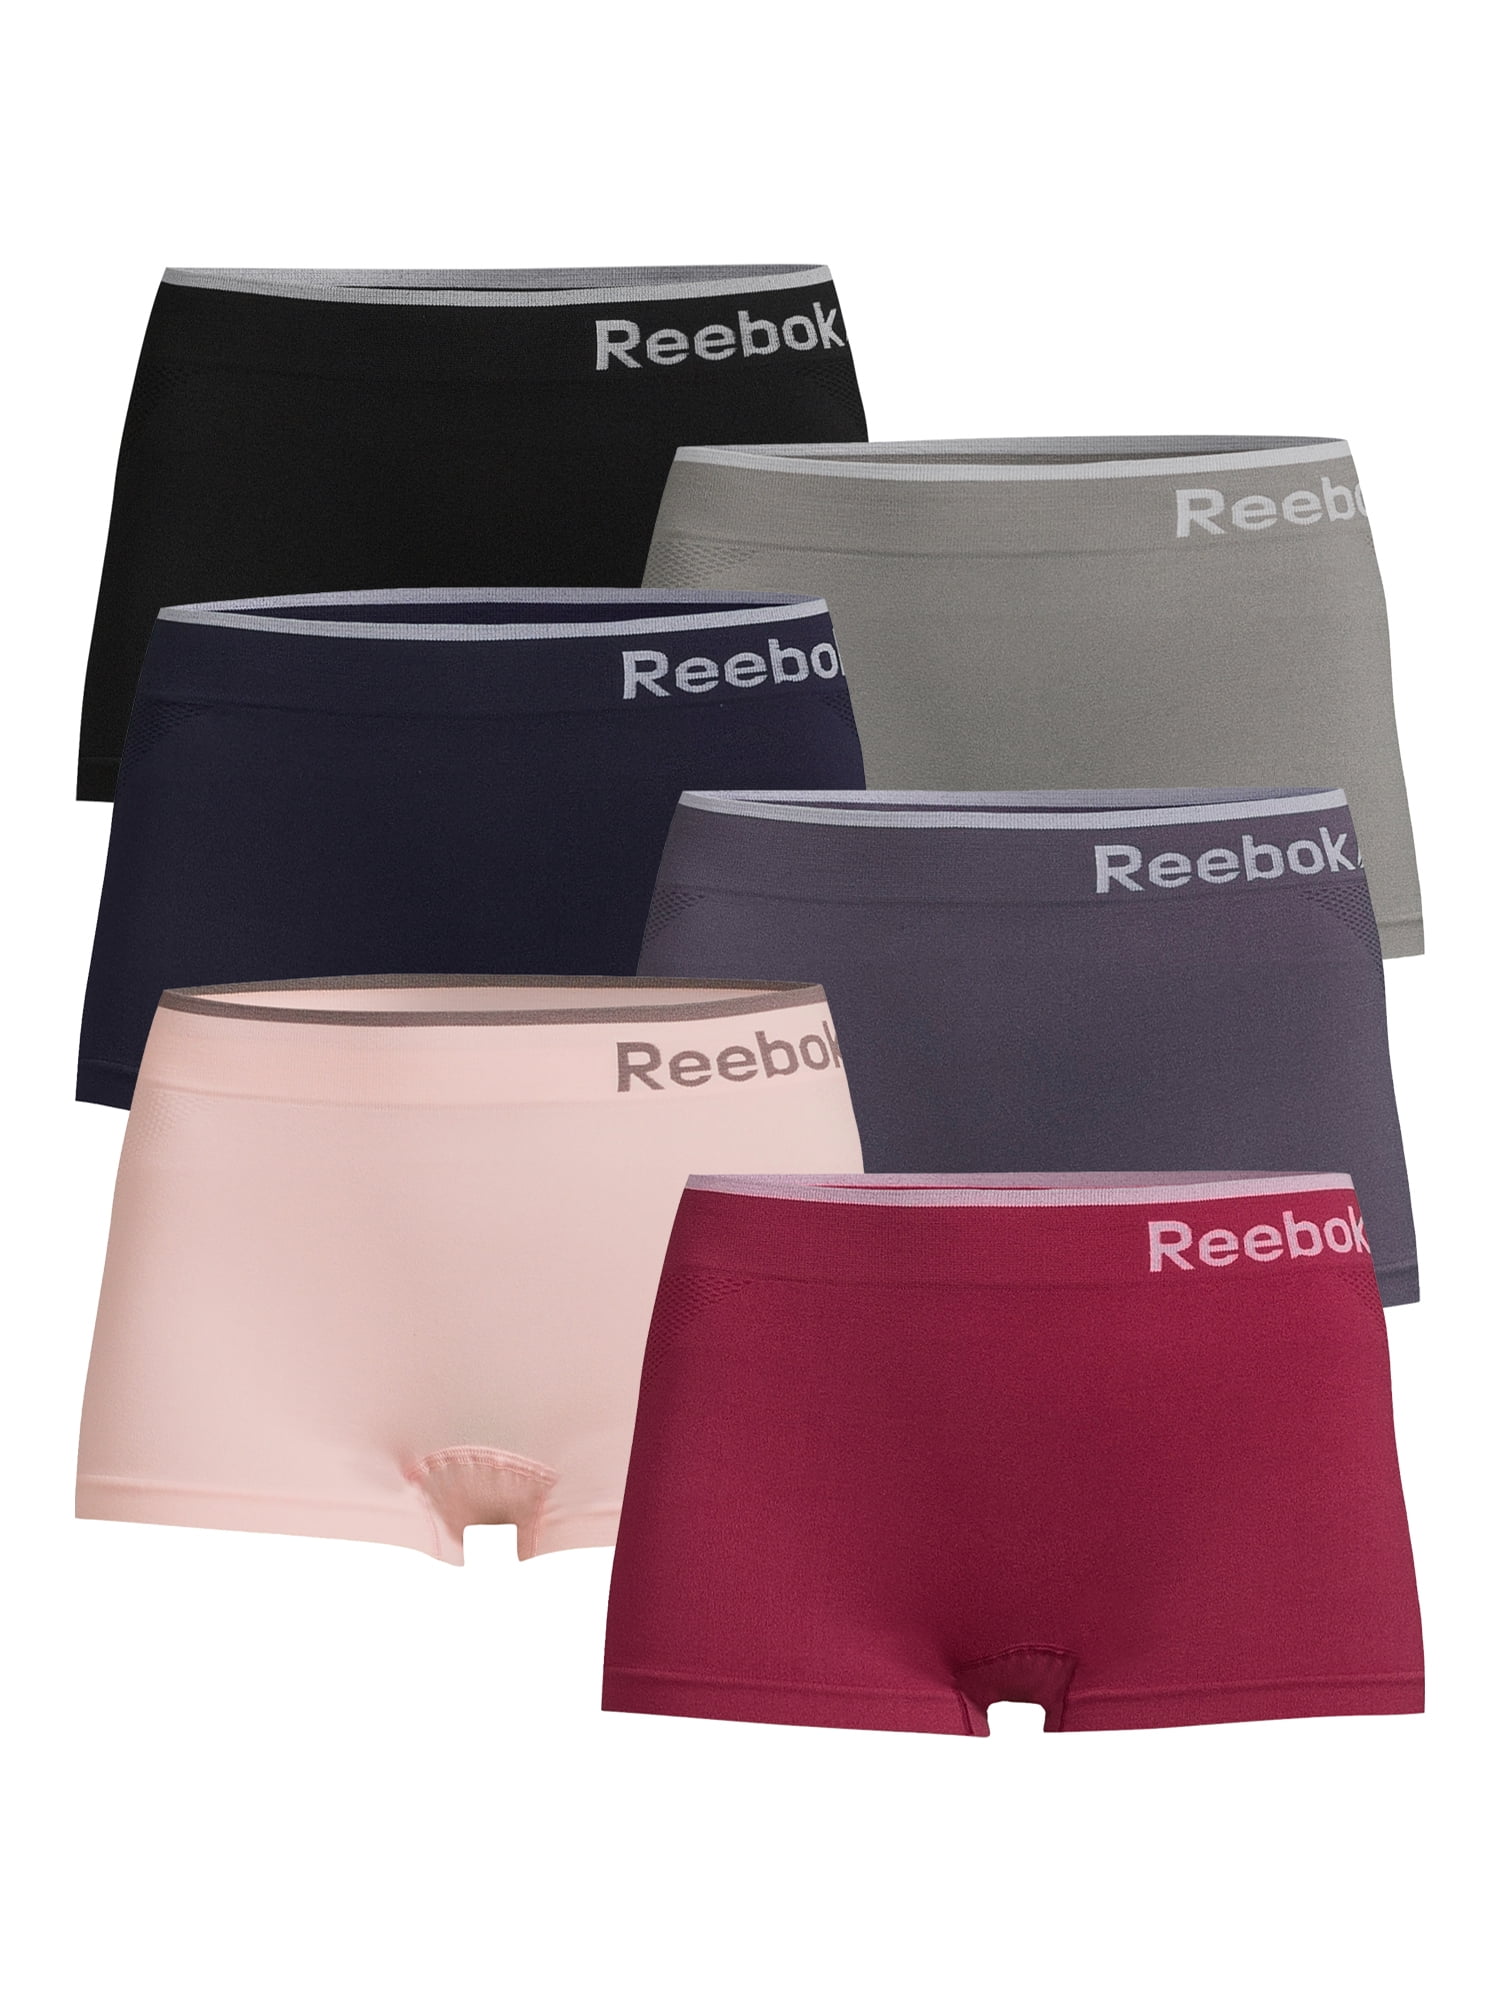 Reebok Women's Seamless Briefs, 6-Pack 